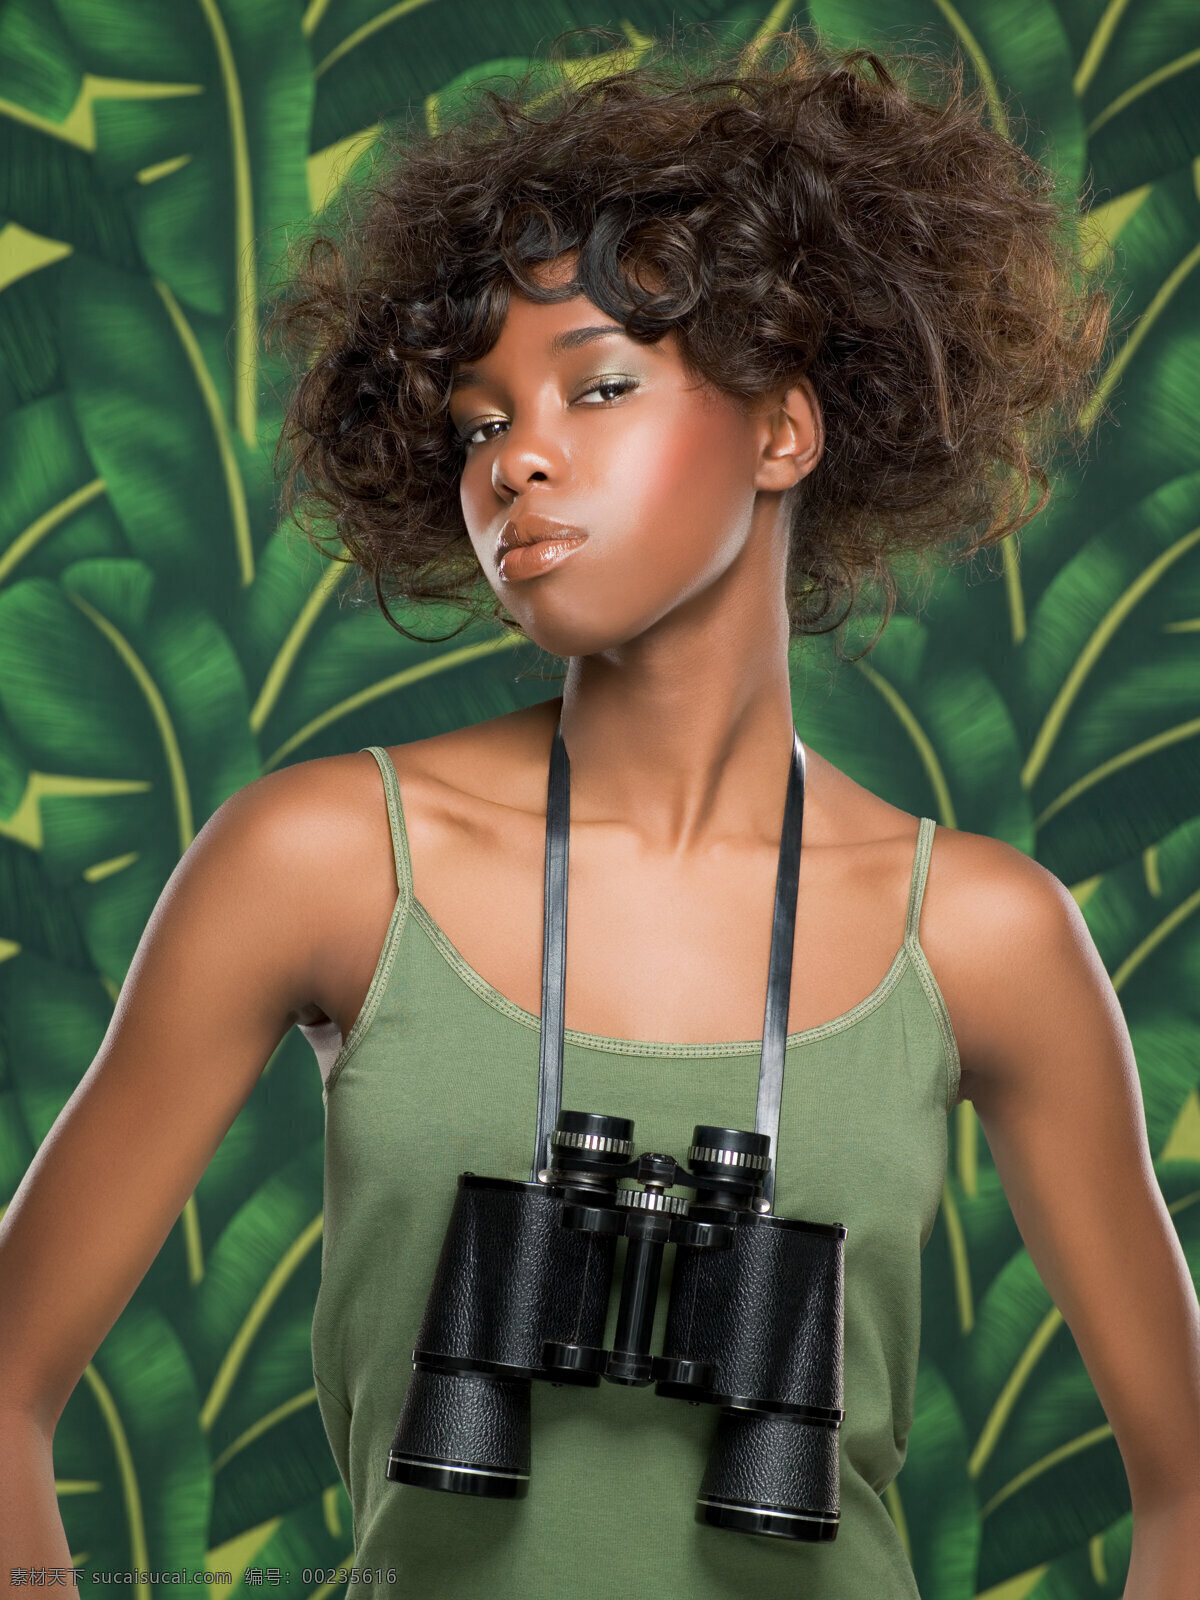 挂 望远镜 黑人 卷发 女人 绿叶 发型 野性 另类 挂着 发型设计 性感 创意 背景 模特 人物图库 国外美女 高清图片 美女图片 人物图片